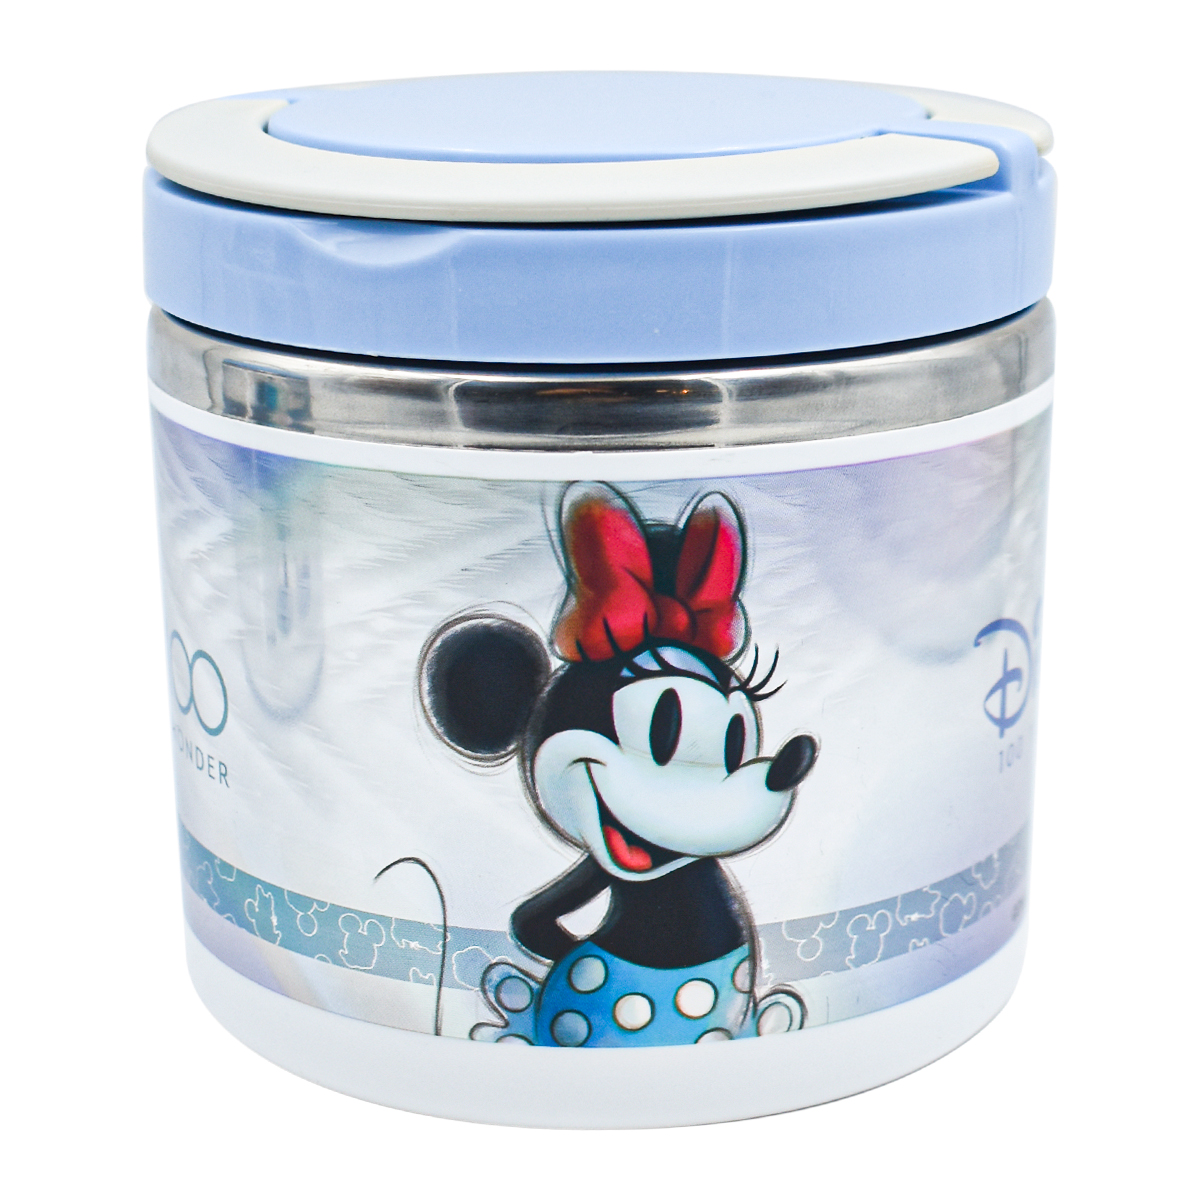 Porta Yogurt Disney - Tienda Infantil - La Mirilla Kids